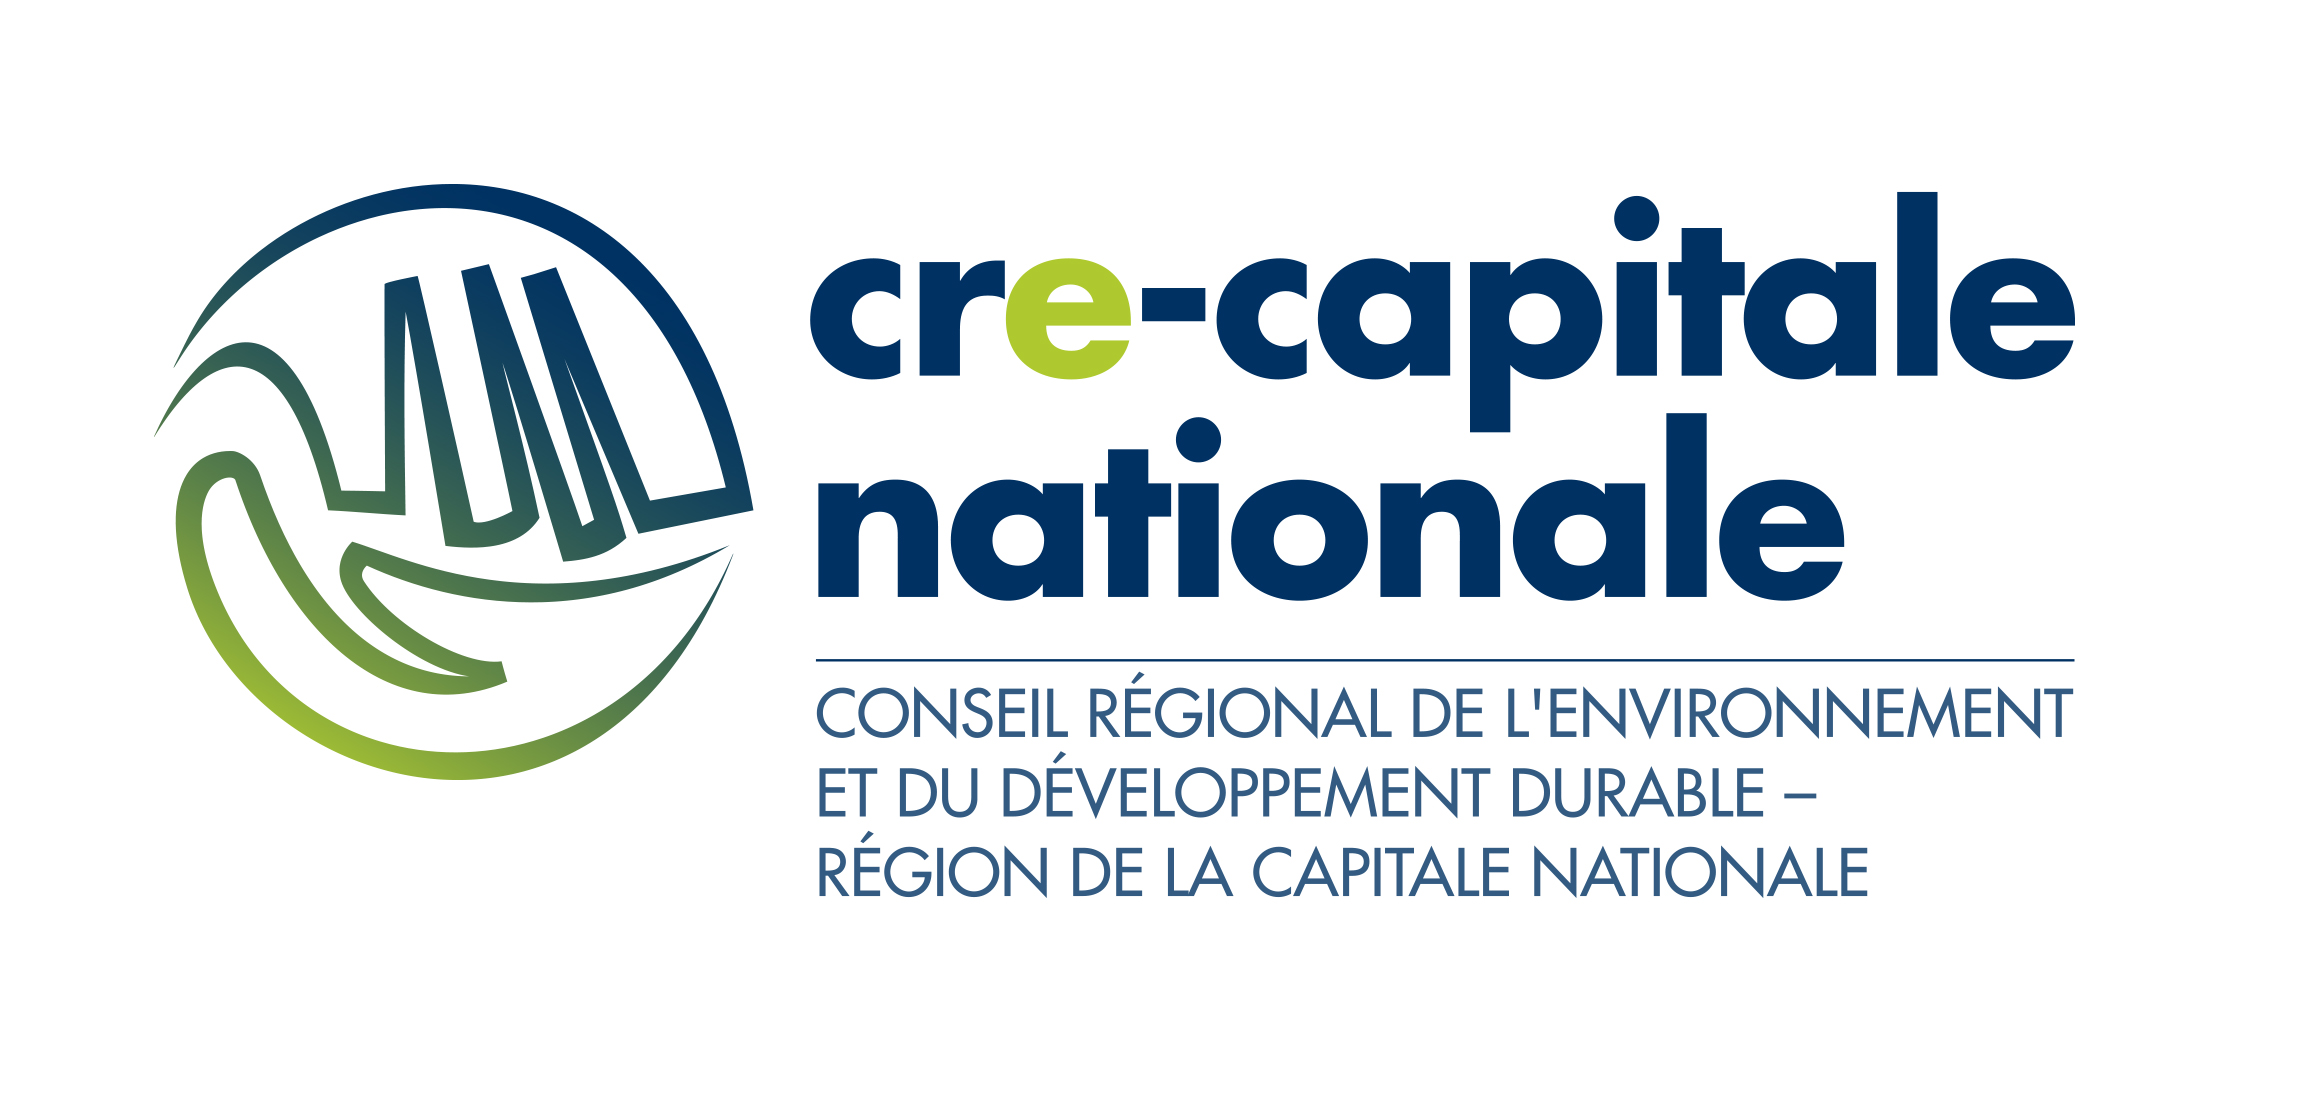 Conseil régional de l'environnement - région de la Capitale-Nationale